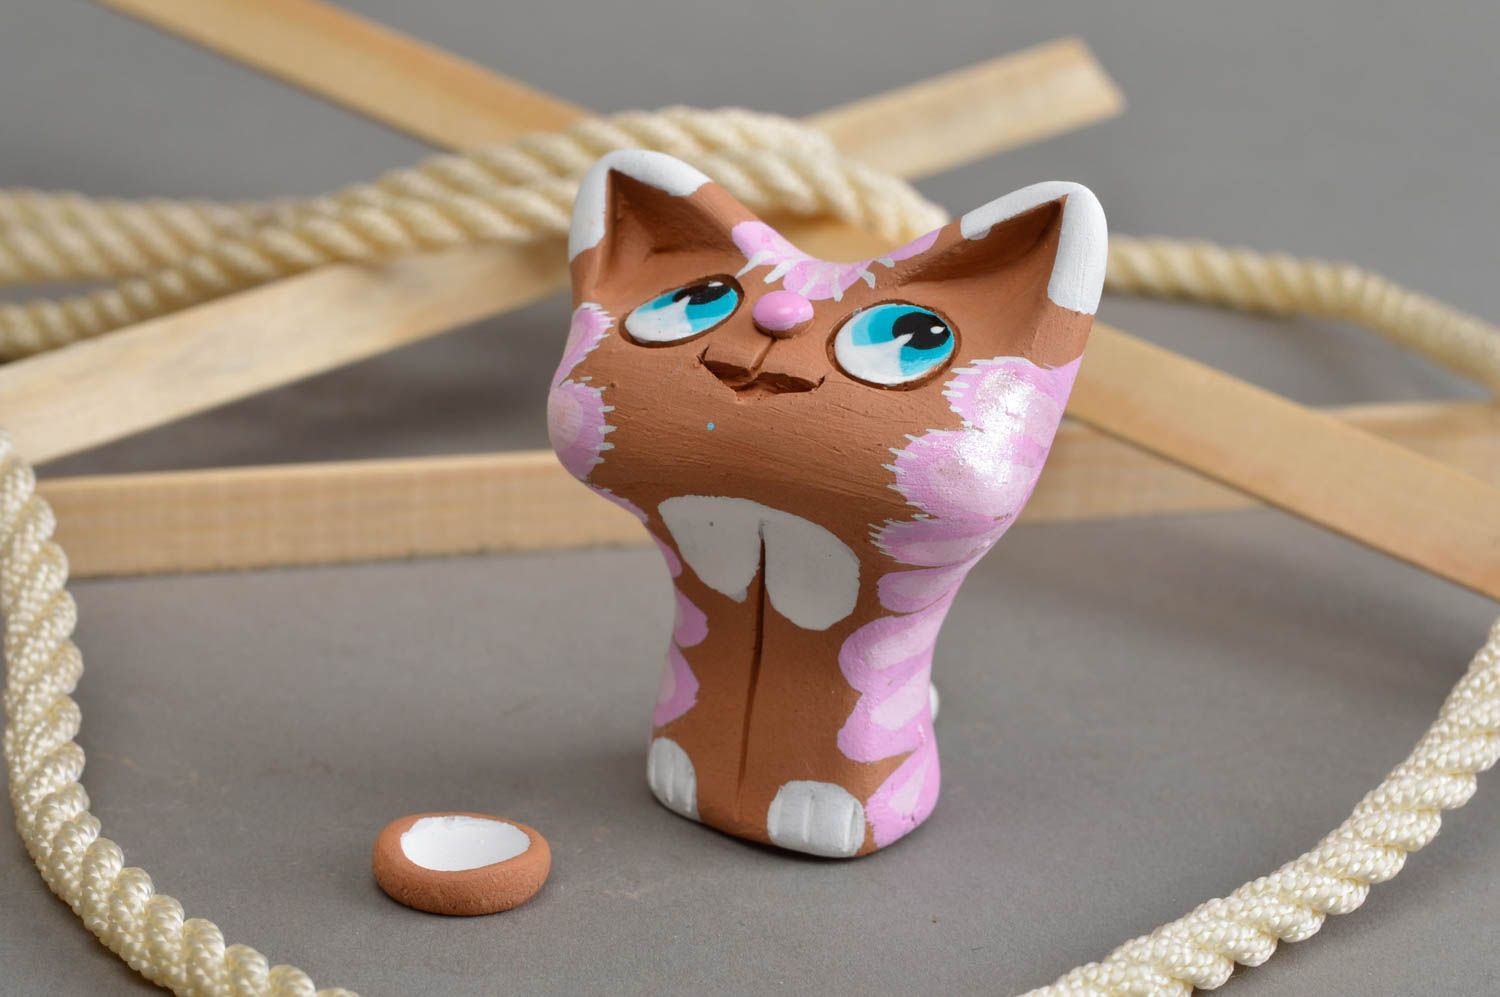 Глиняный расписанный сувенир-статуэтка ручной работы кошка с розовой холкой фото 1